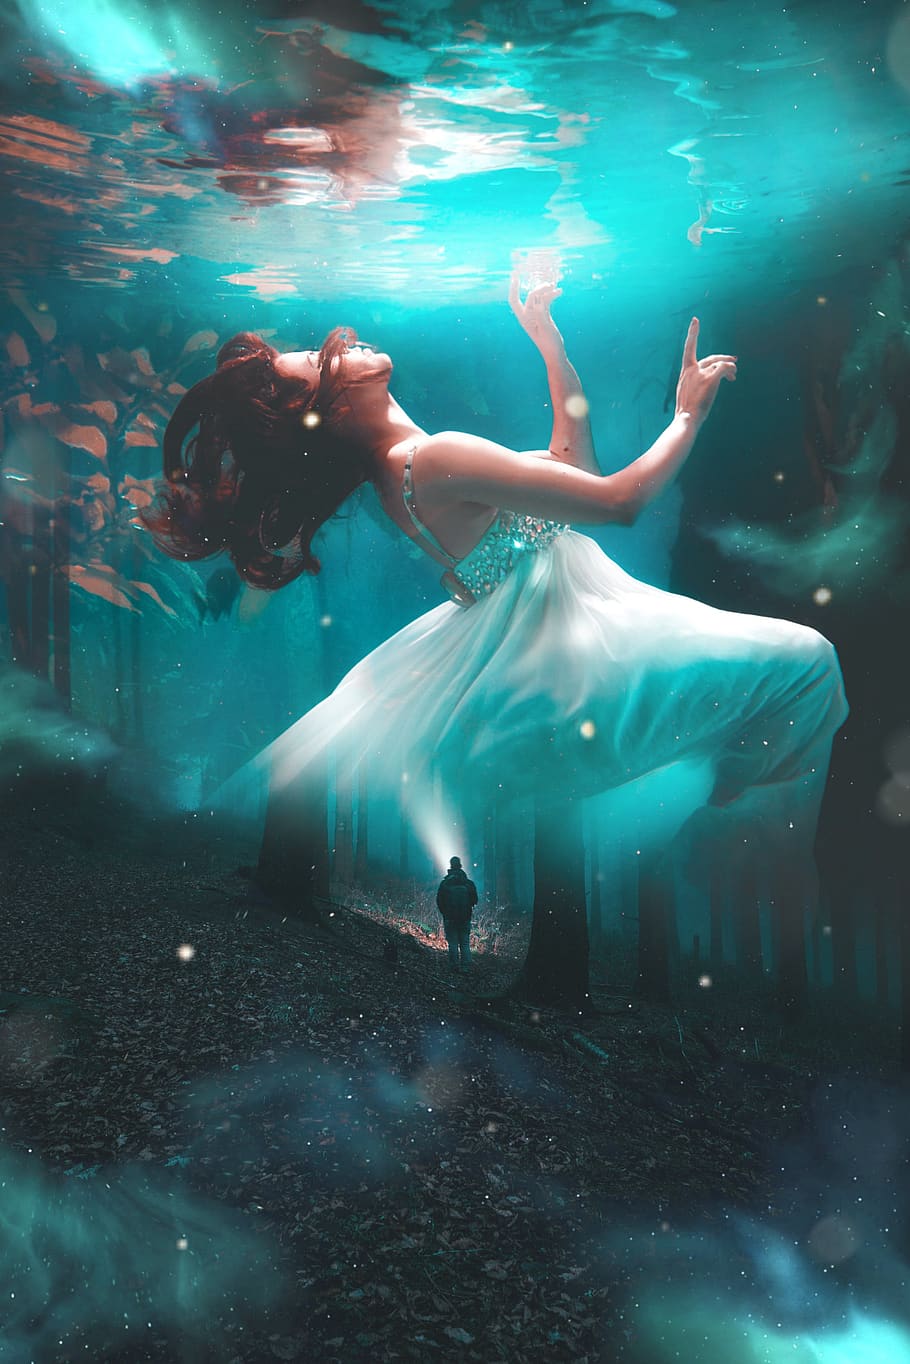 girl, underwater, man, lantern, forest, surrealism, background, fiction, fantasy, shop